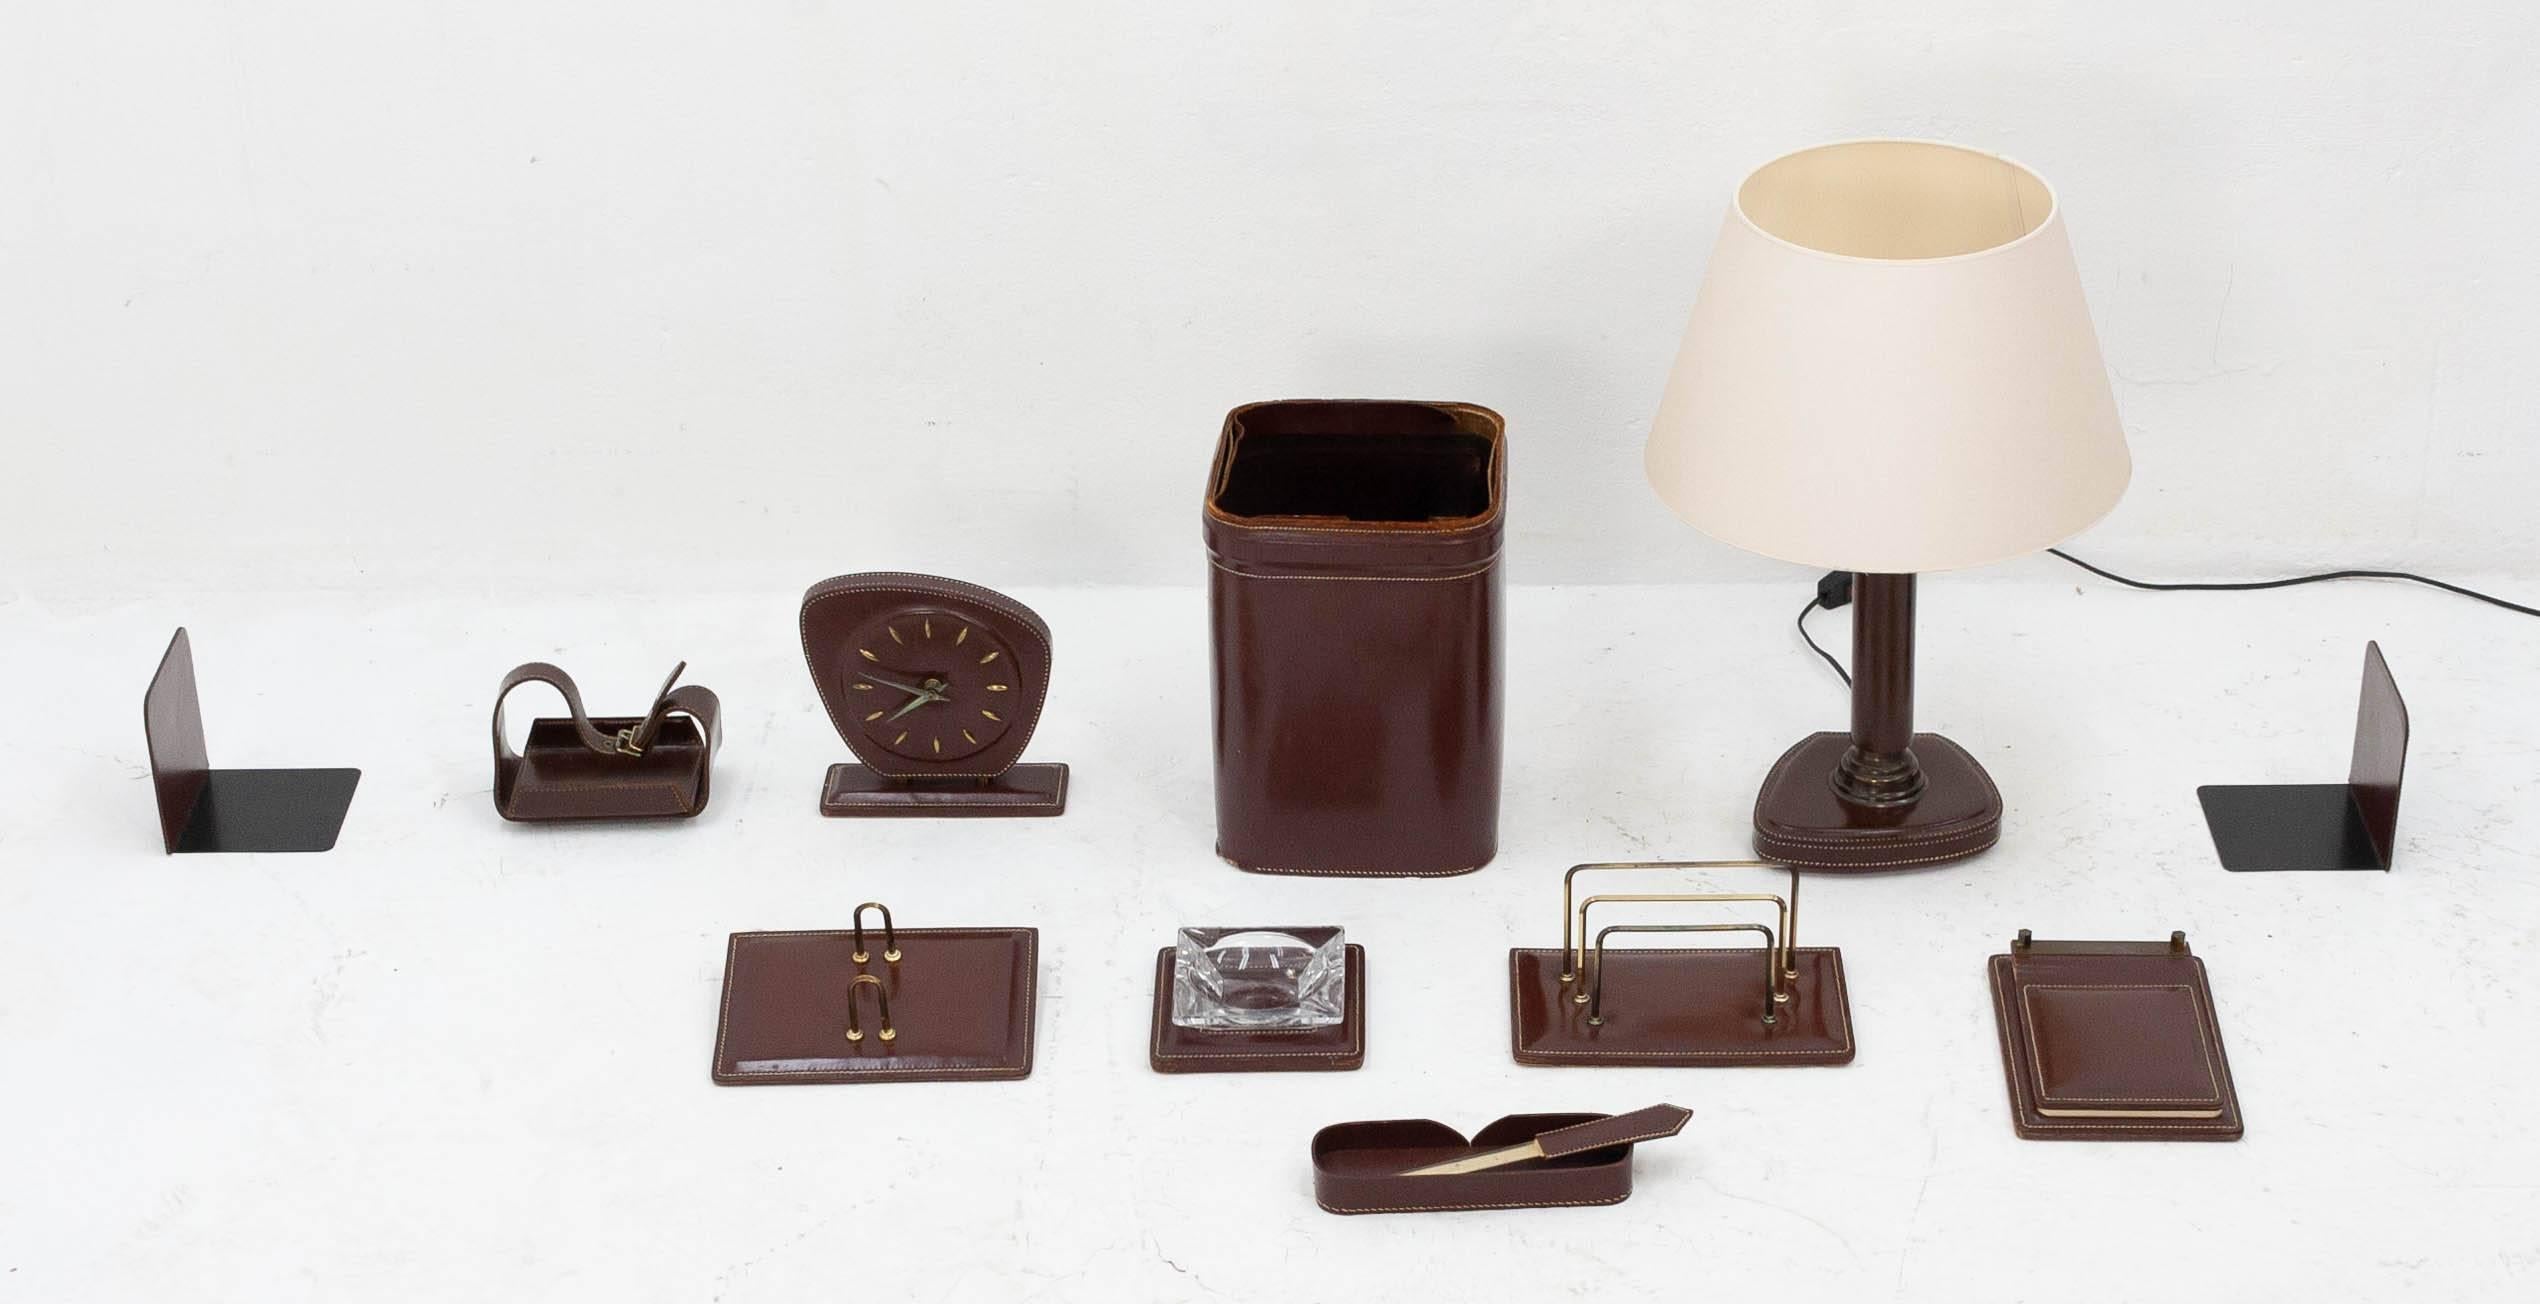 Fabuleux grand ensemble de bureau en cuir brun surpiqué, français, années 1960. Cet ensemble comprend les onze articles suivants :

- Horloge de bureau (en bon état de marche)
- Deux serre-livres
- Porte-lettres
- Porte-cartes de visite
-